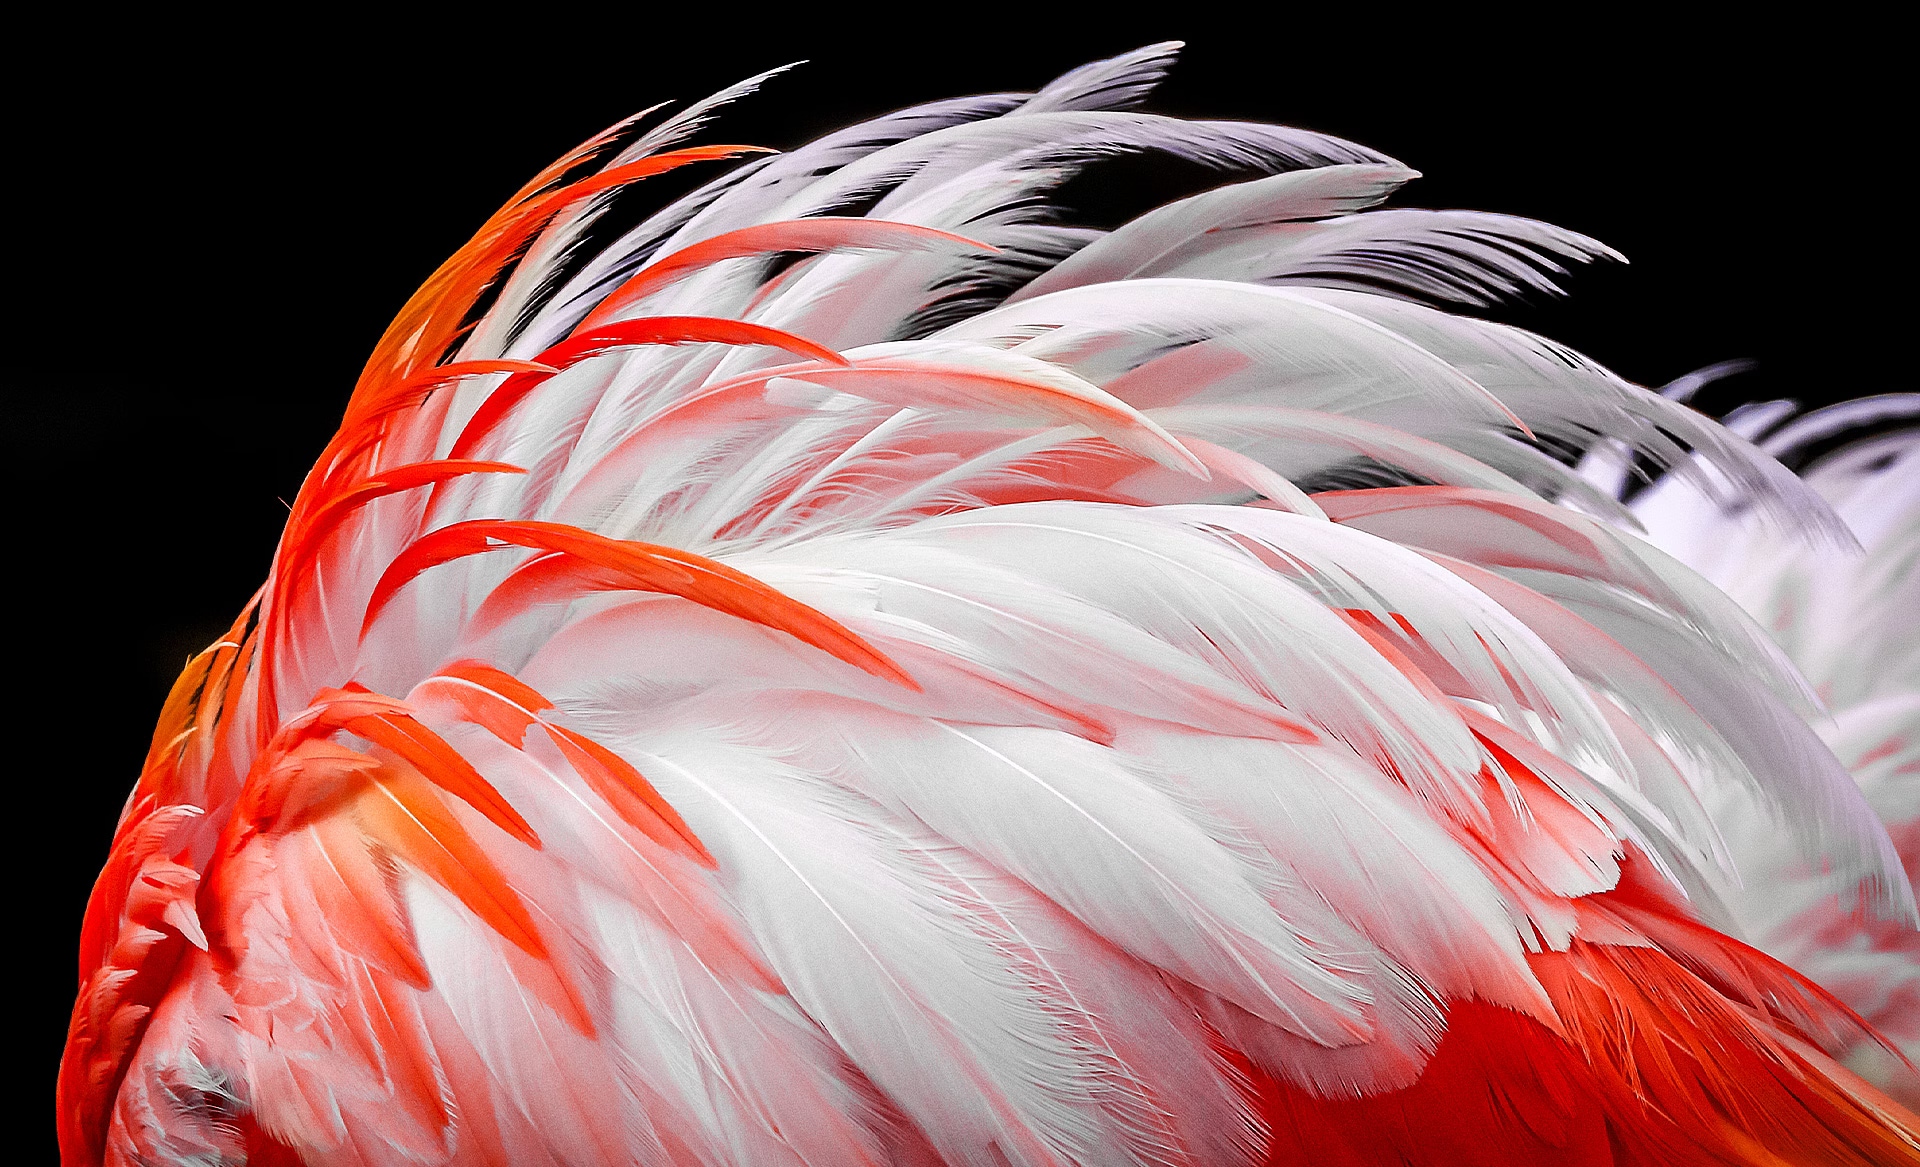 螢幕上出現白色和橙色火烈鳥羽毛的暗淡影像。羽毛的亮度會逐漸提升 8%、13%、20%、23%、26% 及最後 30%。